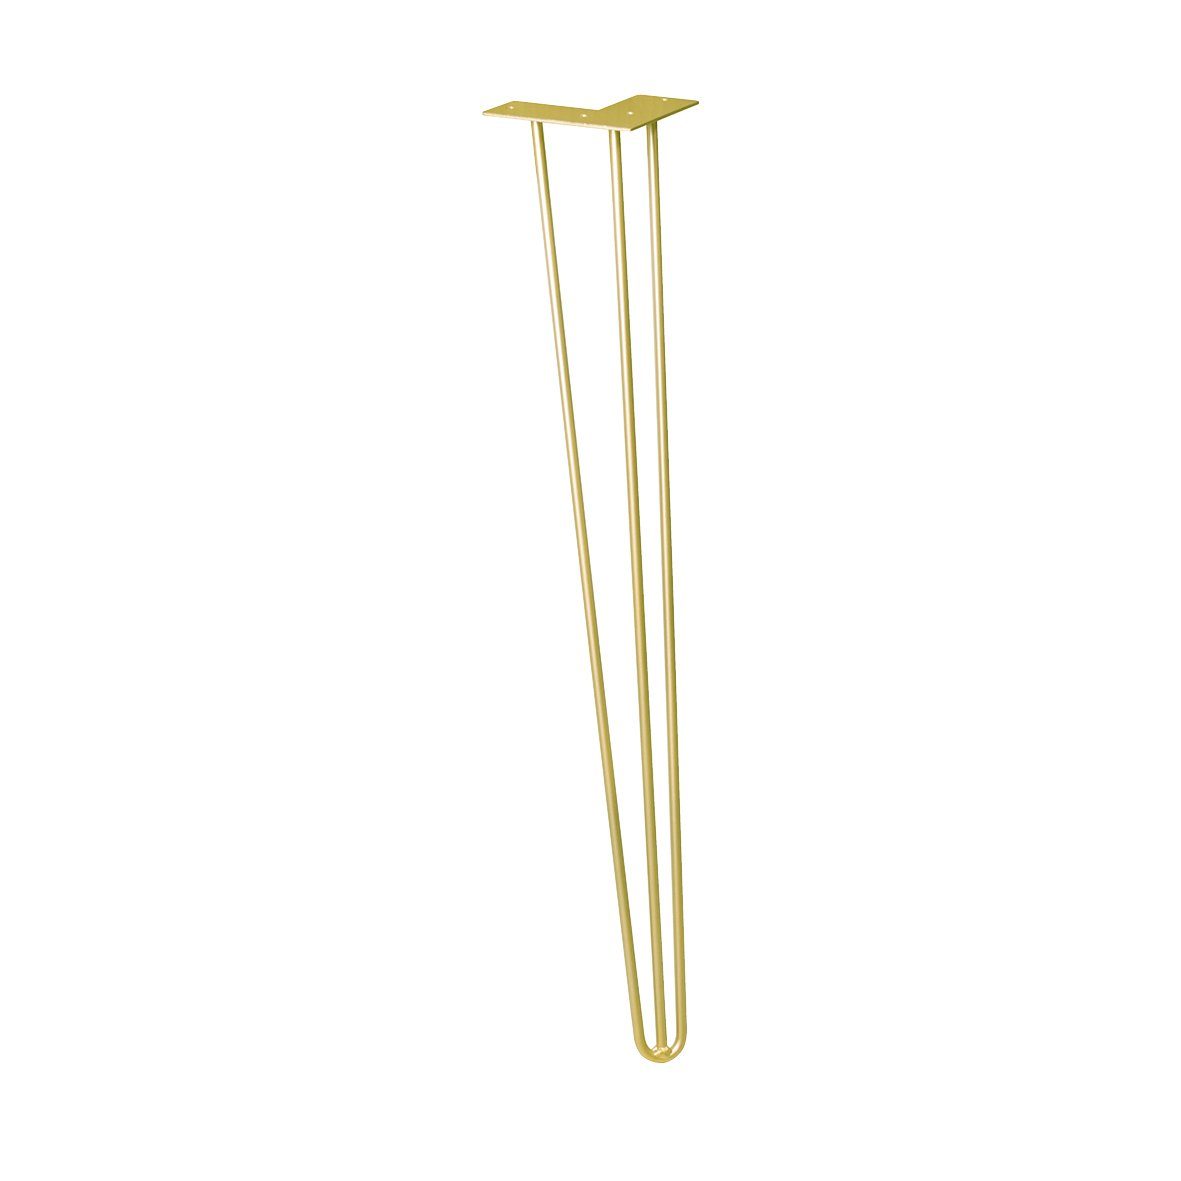 WAGNER design yourself Möbelfuß Möbelbein/Tischbein - HAIRPIN LEG - Retro Style - 12 x 12 x 71 cm in diverse Farben, Bein konisch/schräg verlaufend, mit integrierter Anschraubplatte gold